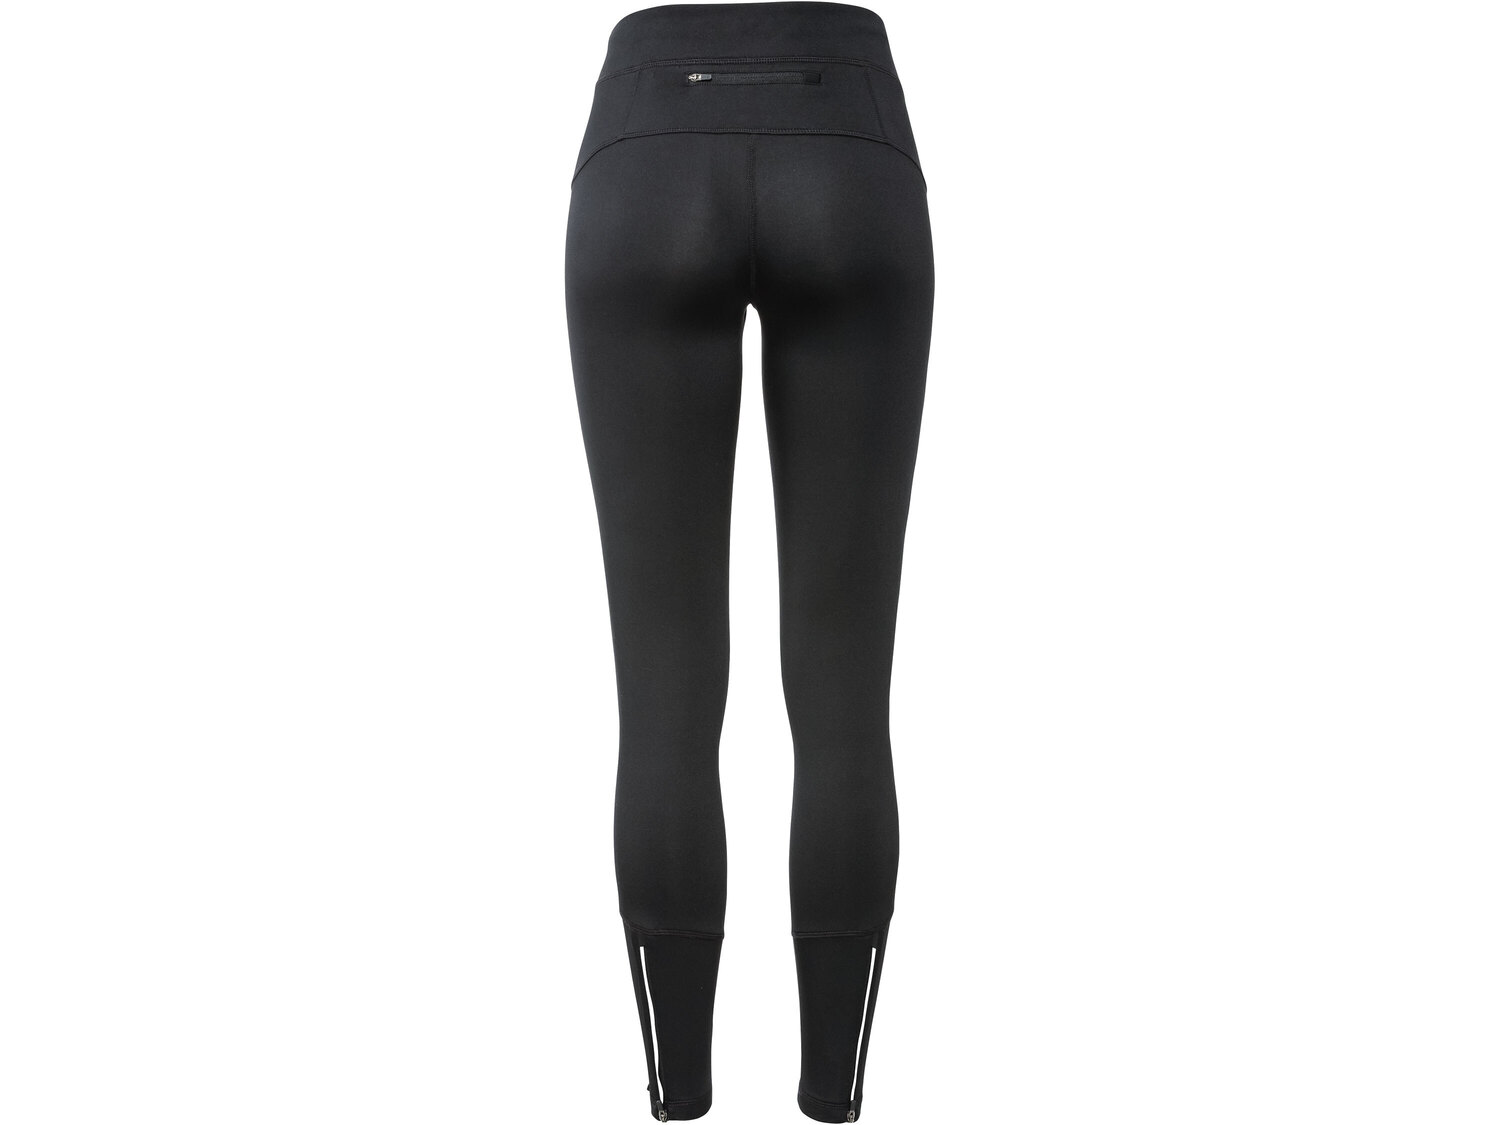 Funkcyjne spodnie softshell Crivit, cena 37,99 PLN 
damskie 
- rozmiary: XS-L
- ...